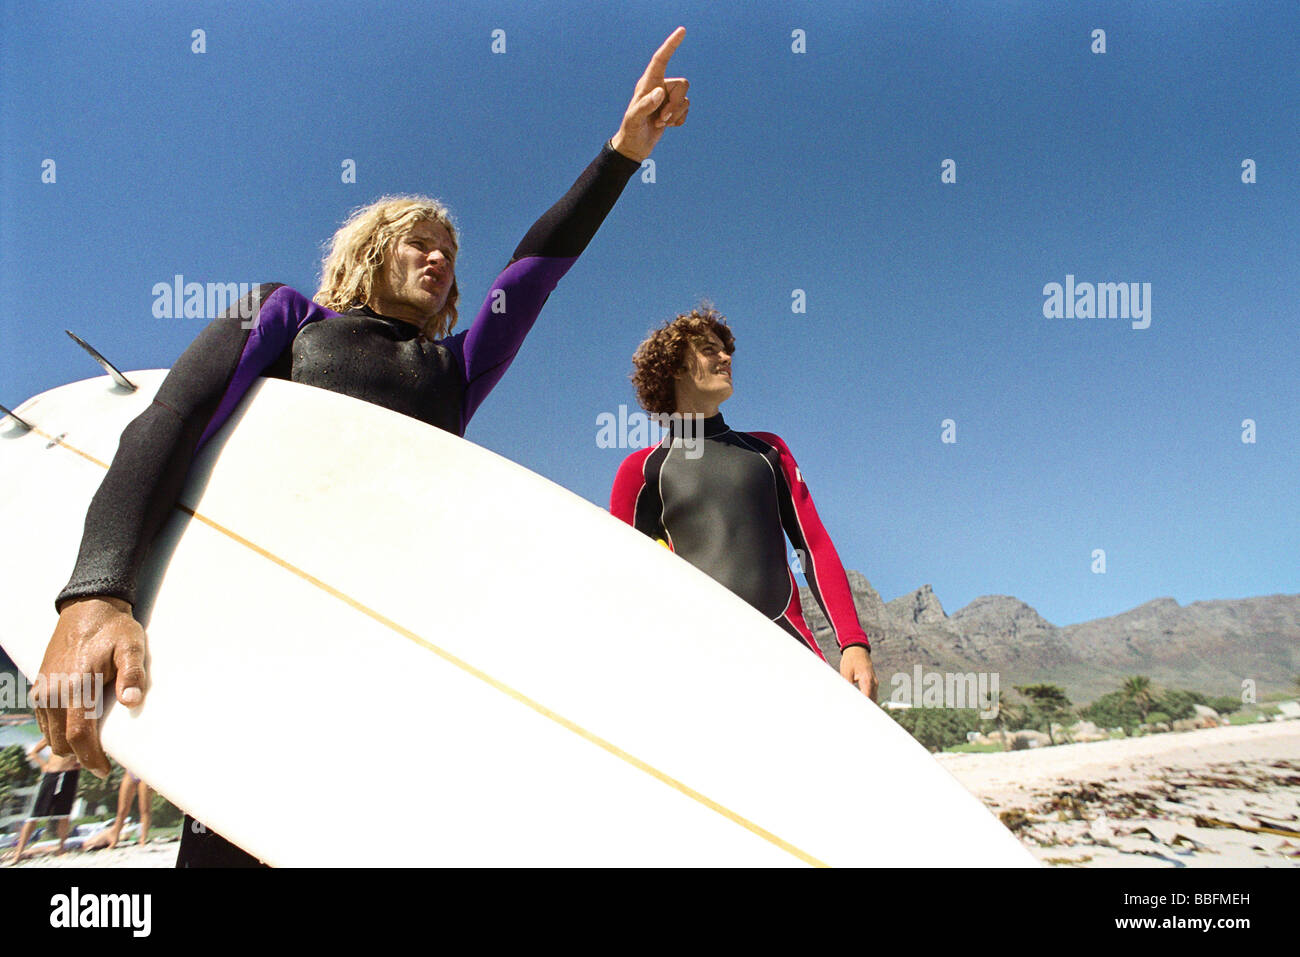 Les surfeurs sur la plage, l'une dirigée à distance Banque D'Images